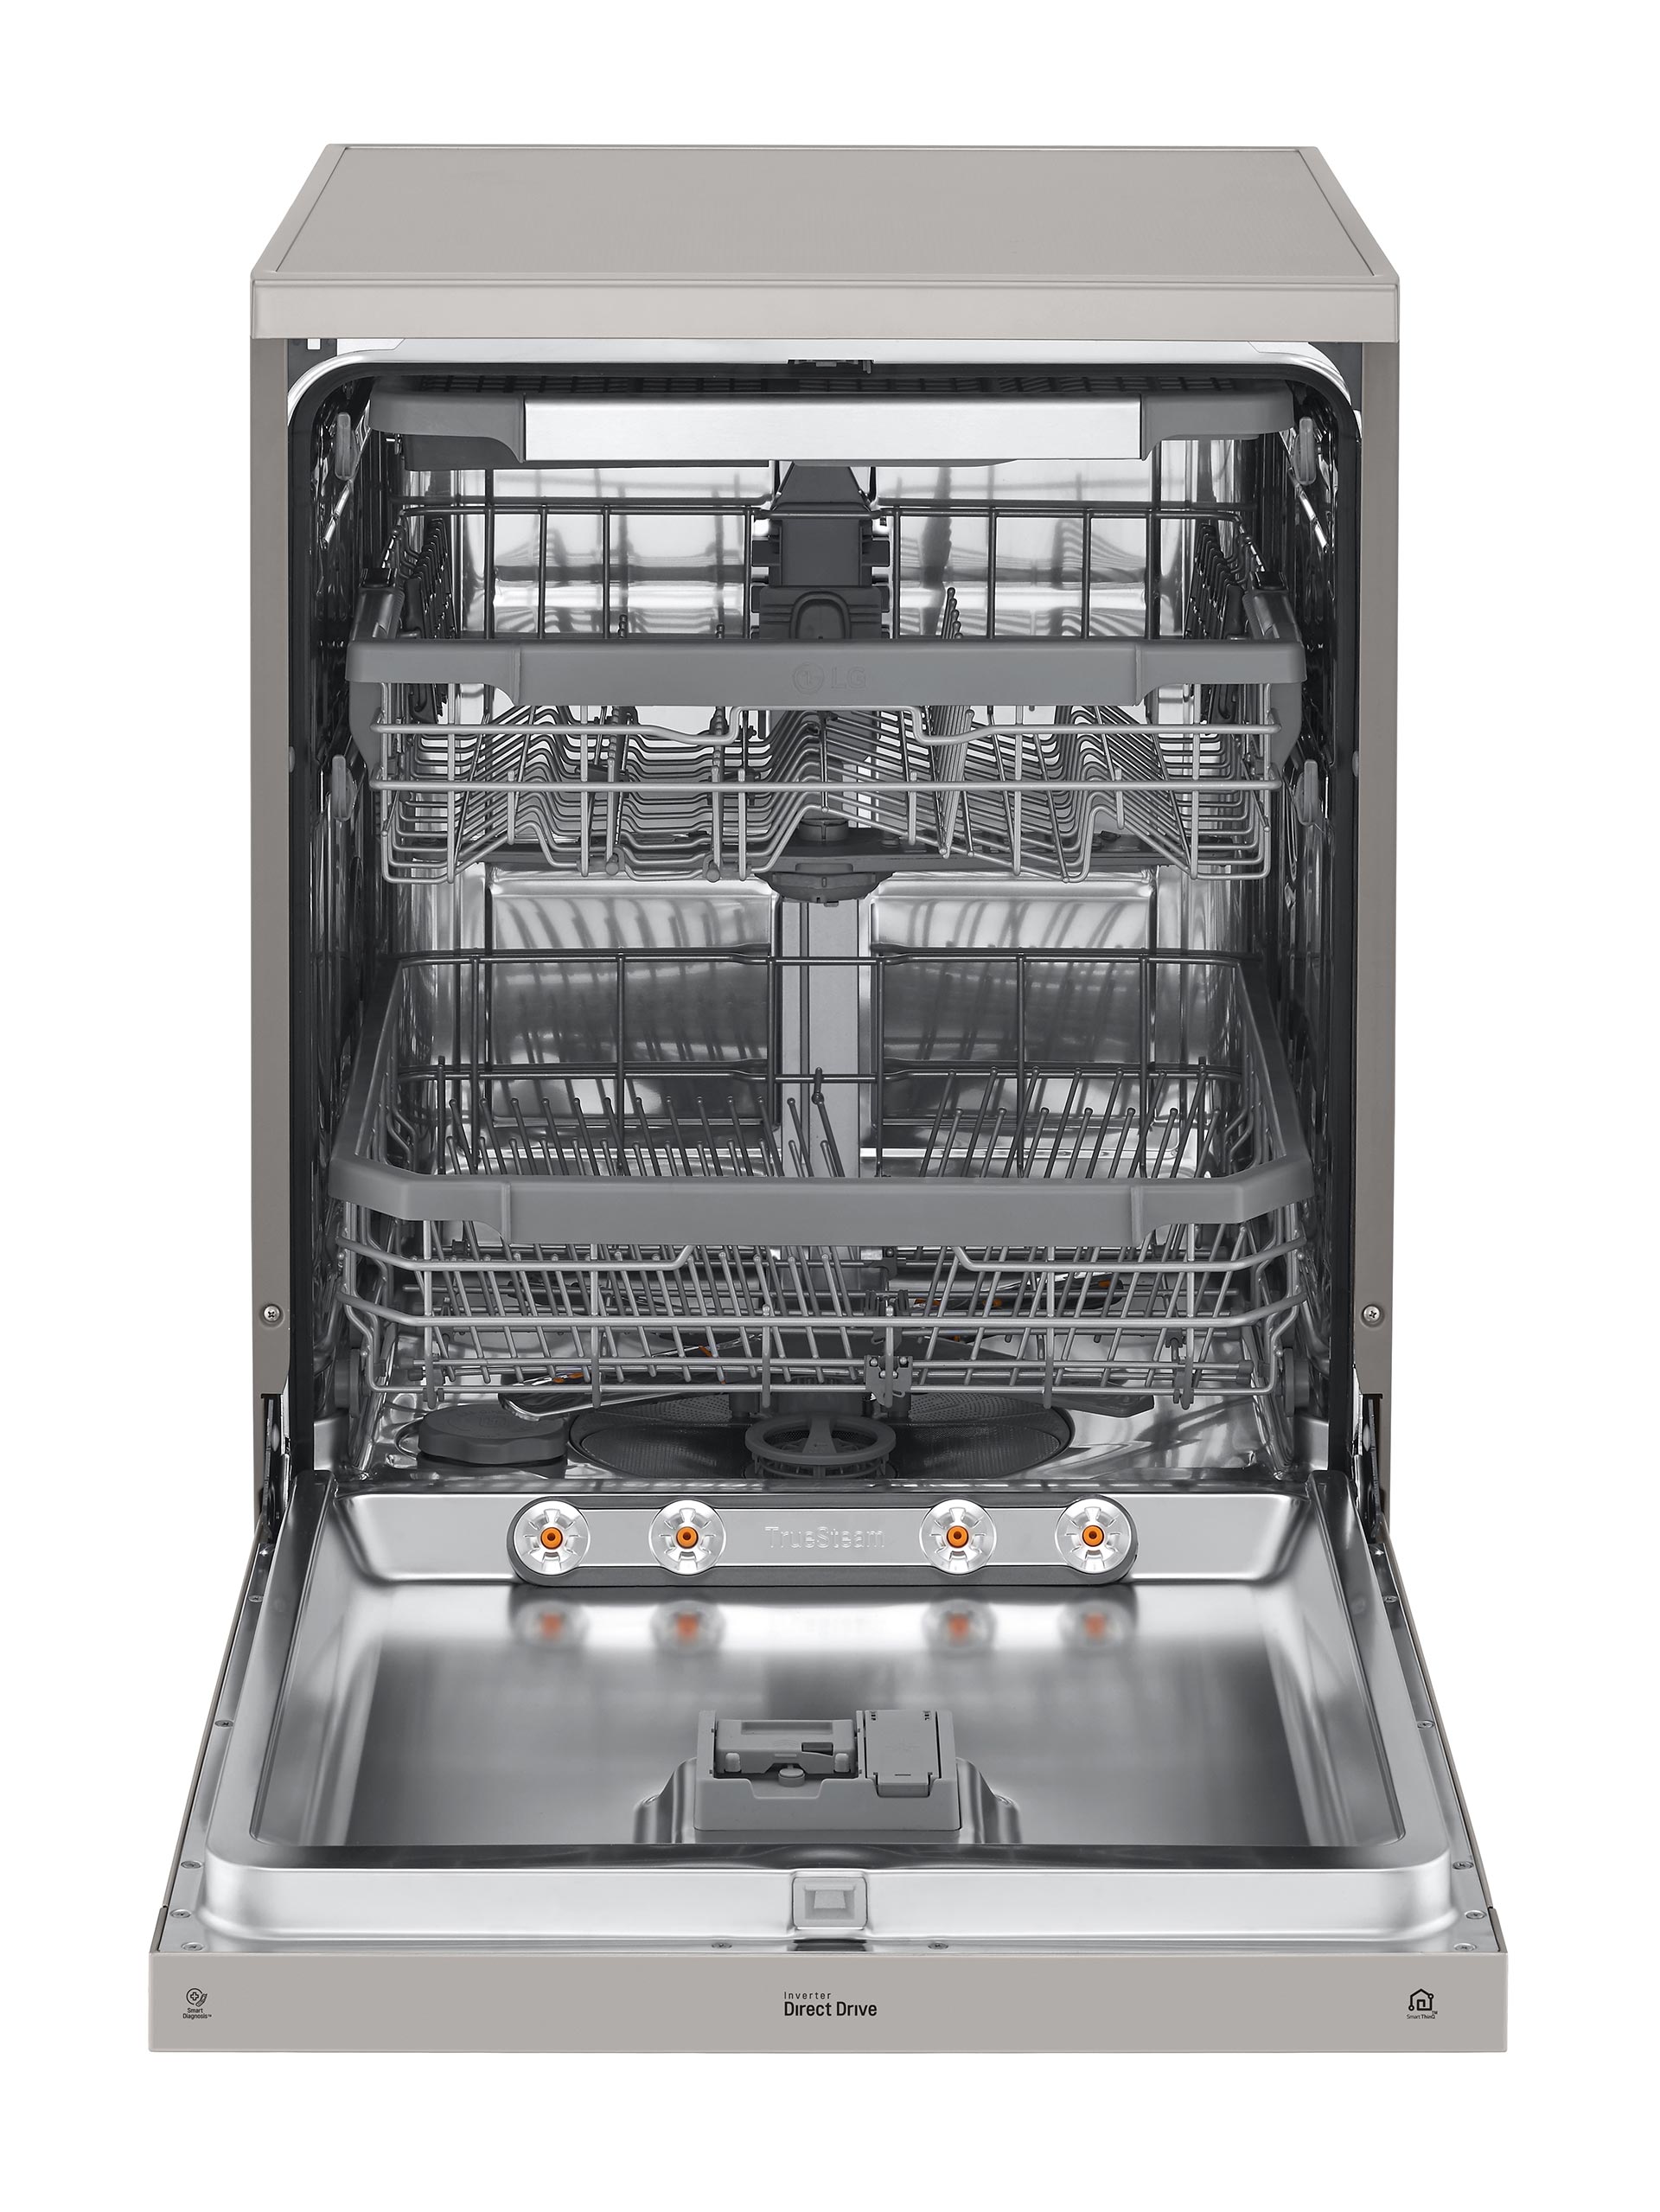 Máquina de lavar louça Samsung - Eletrodomésticos com garantia de qualidade EDP